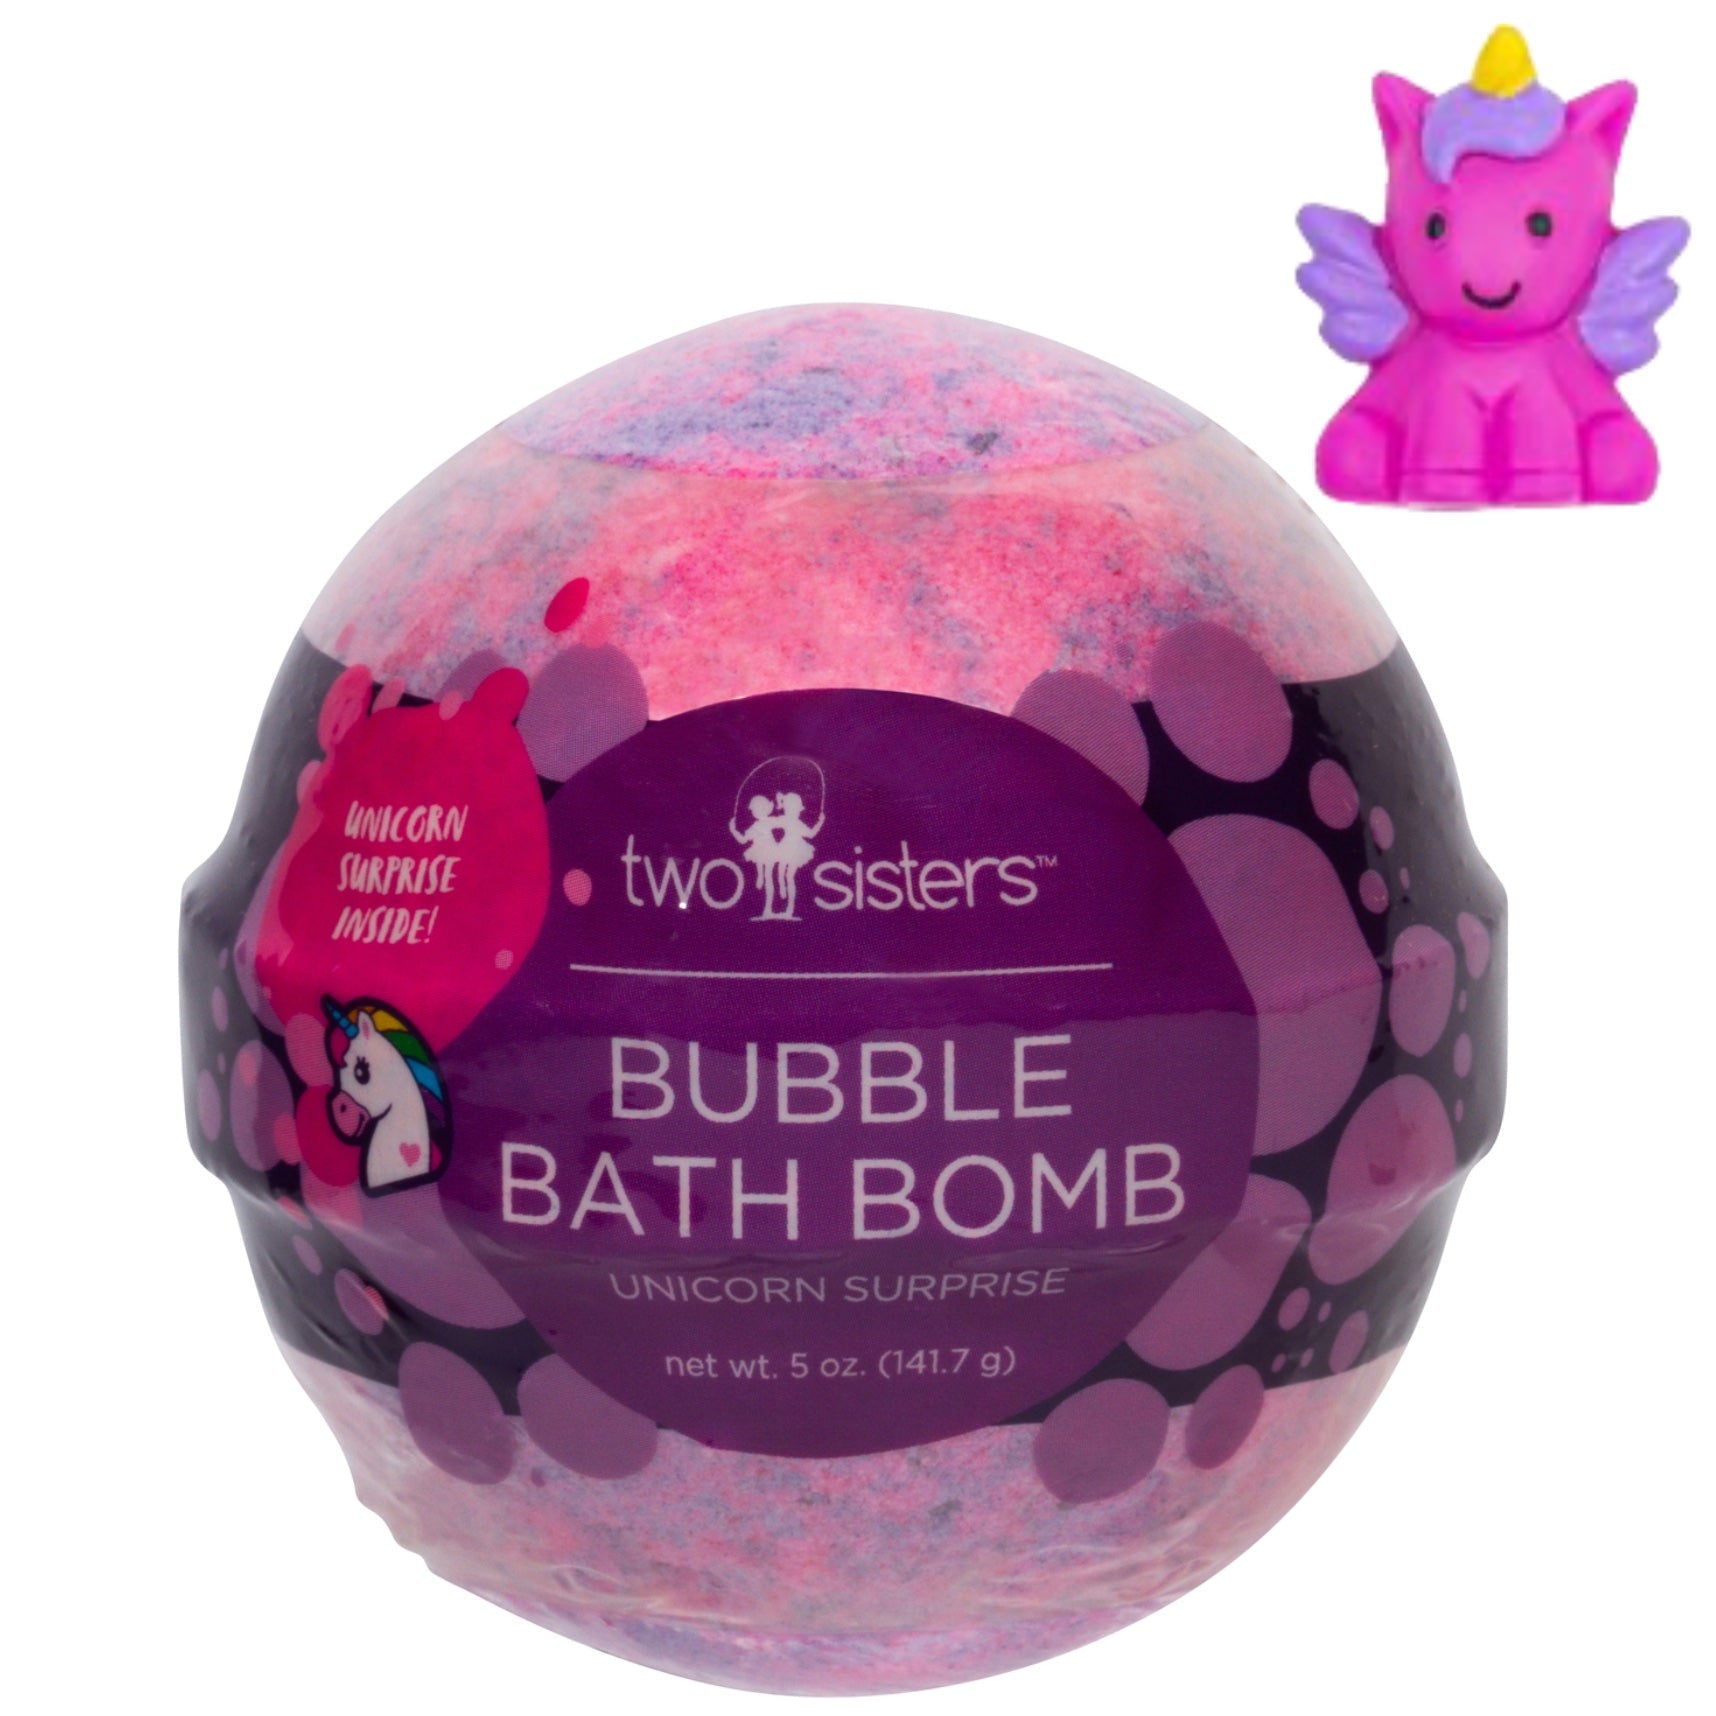 Unicorn Squishy Surprise Bubble Bath Bomb - Gamescape